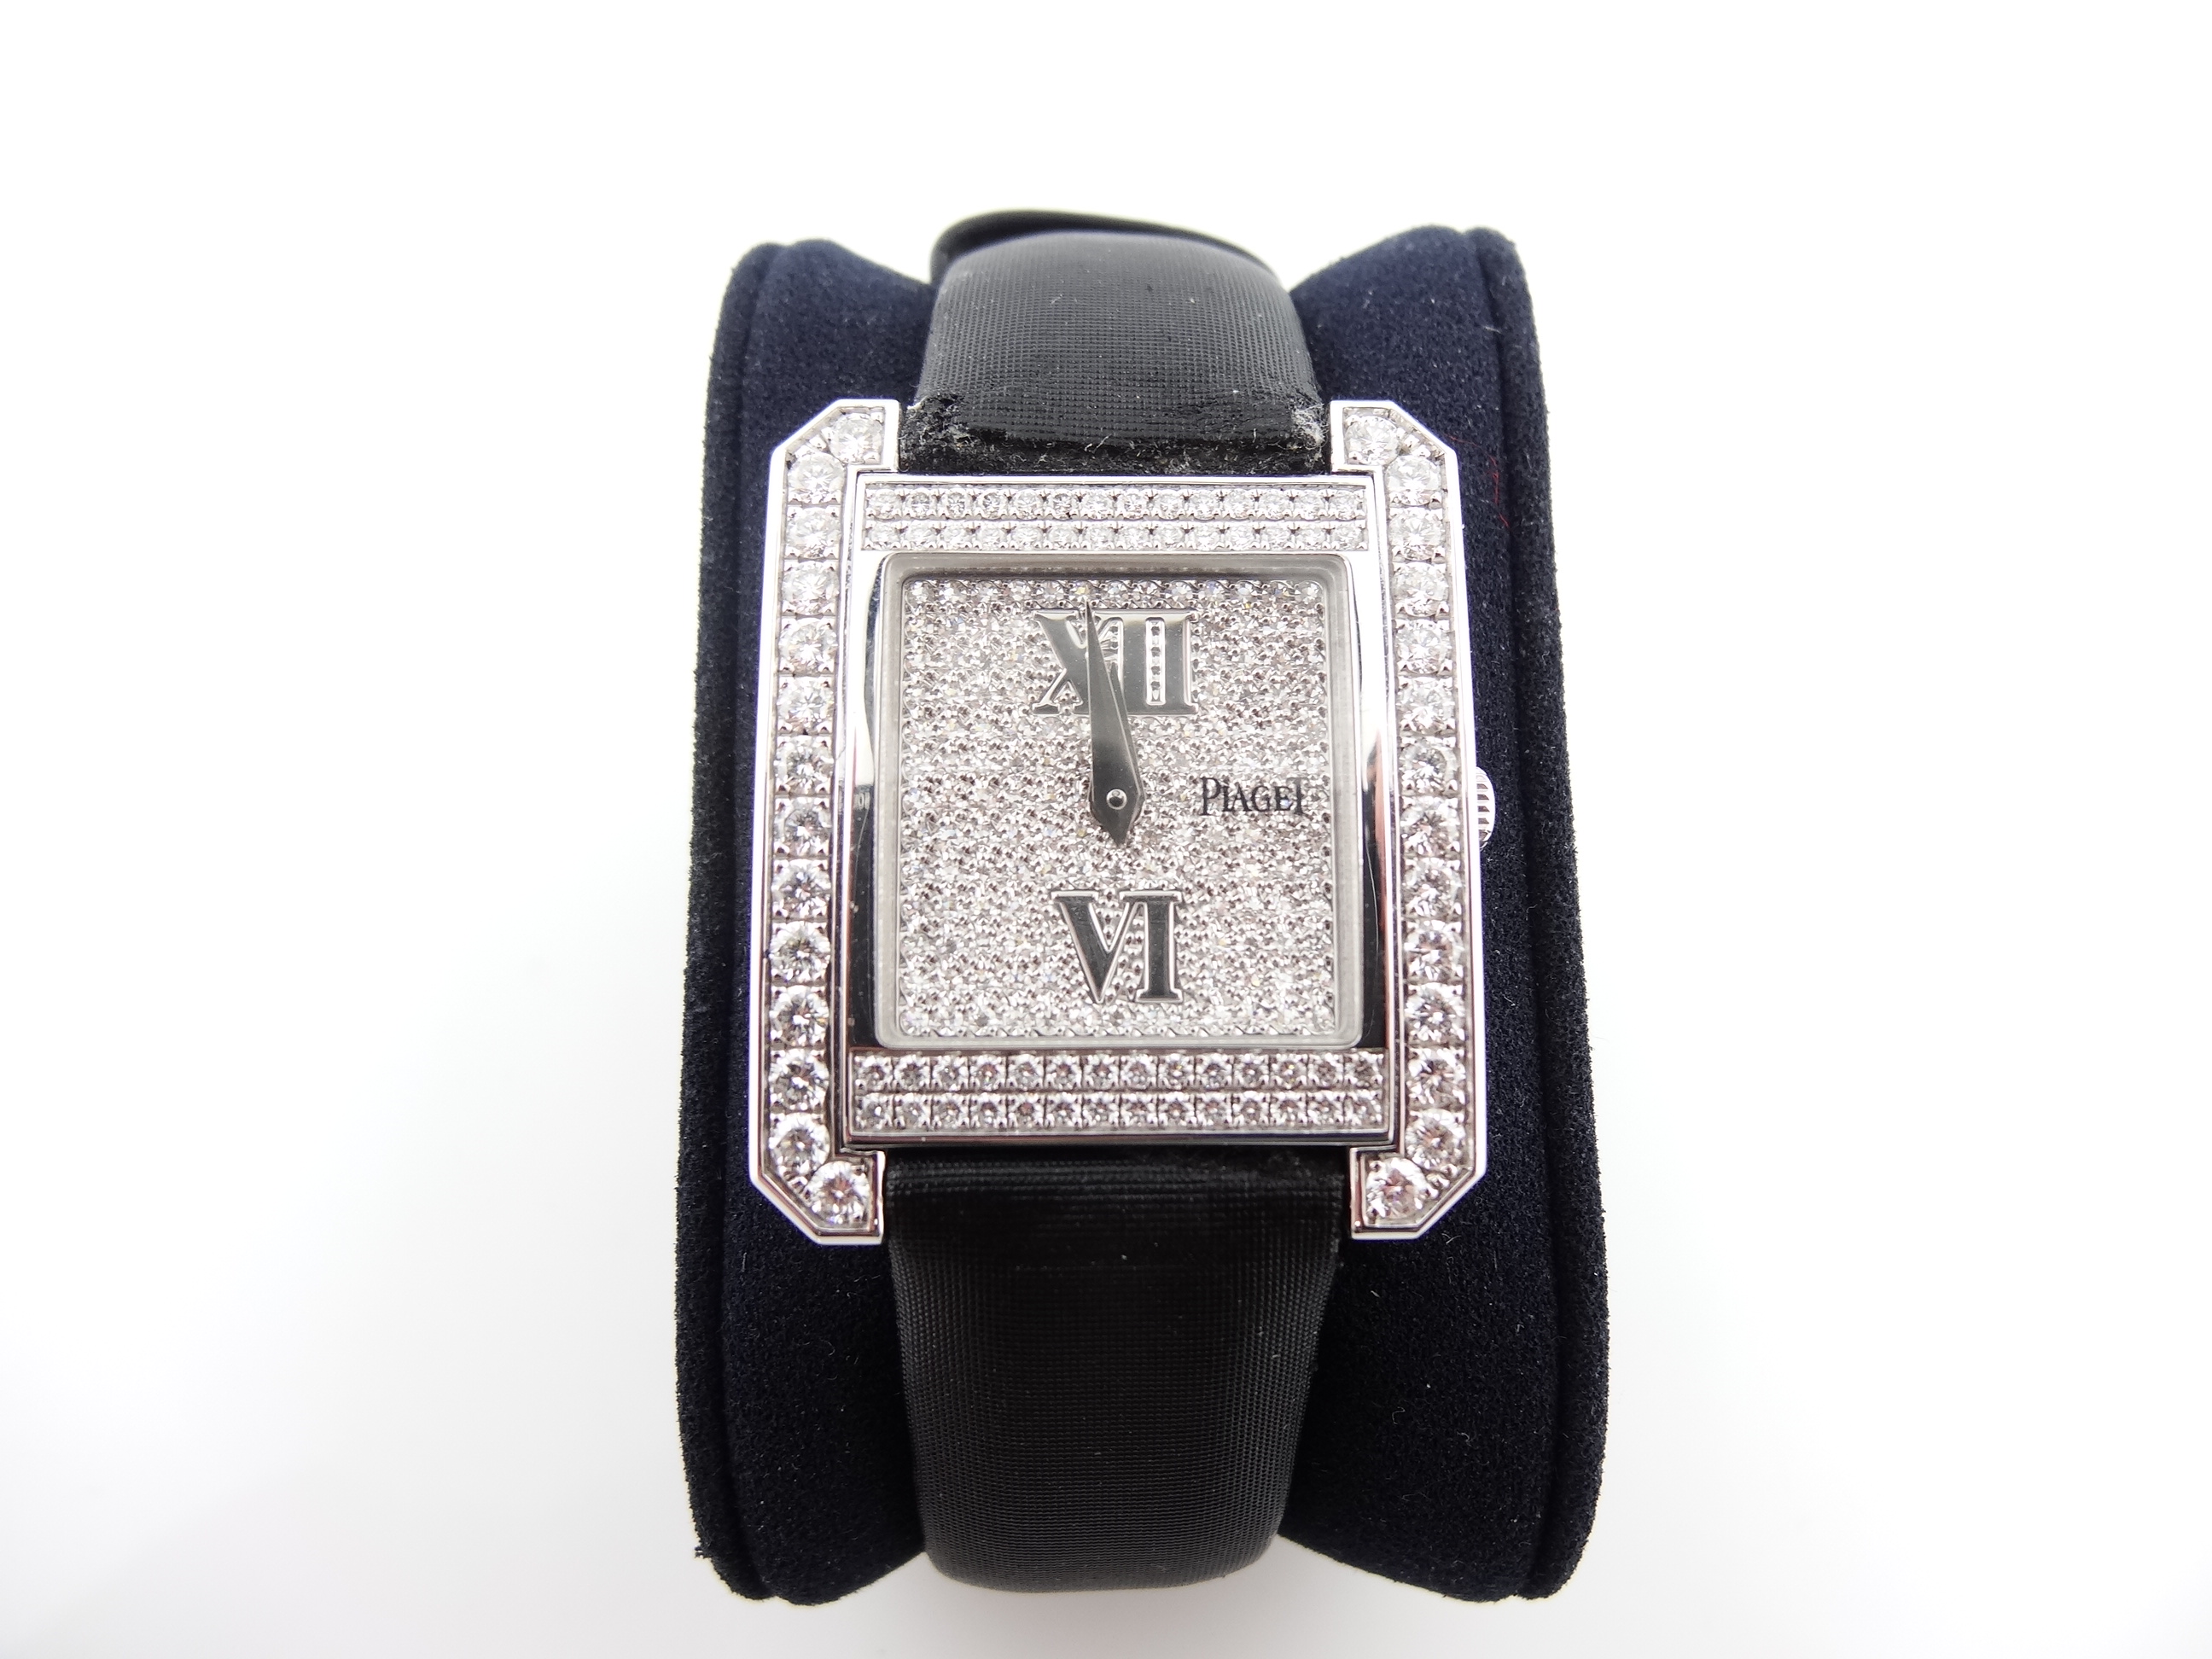 Piaget Ladies Diamond Watch with black satin band - Diamond Mine